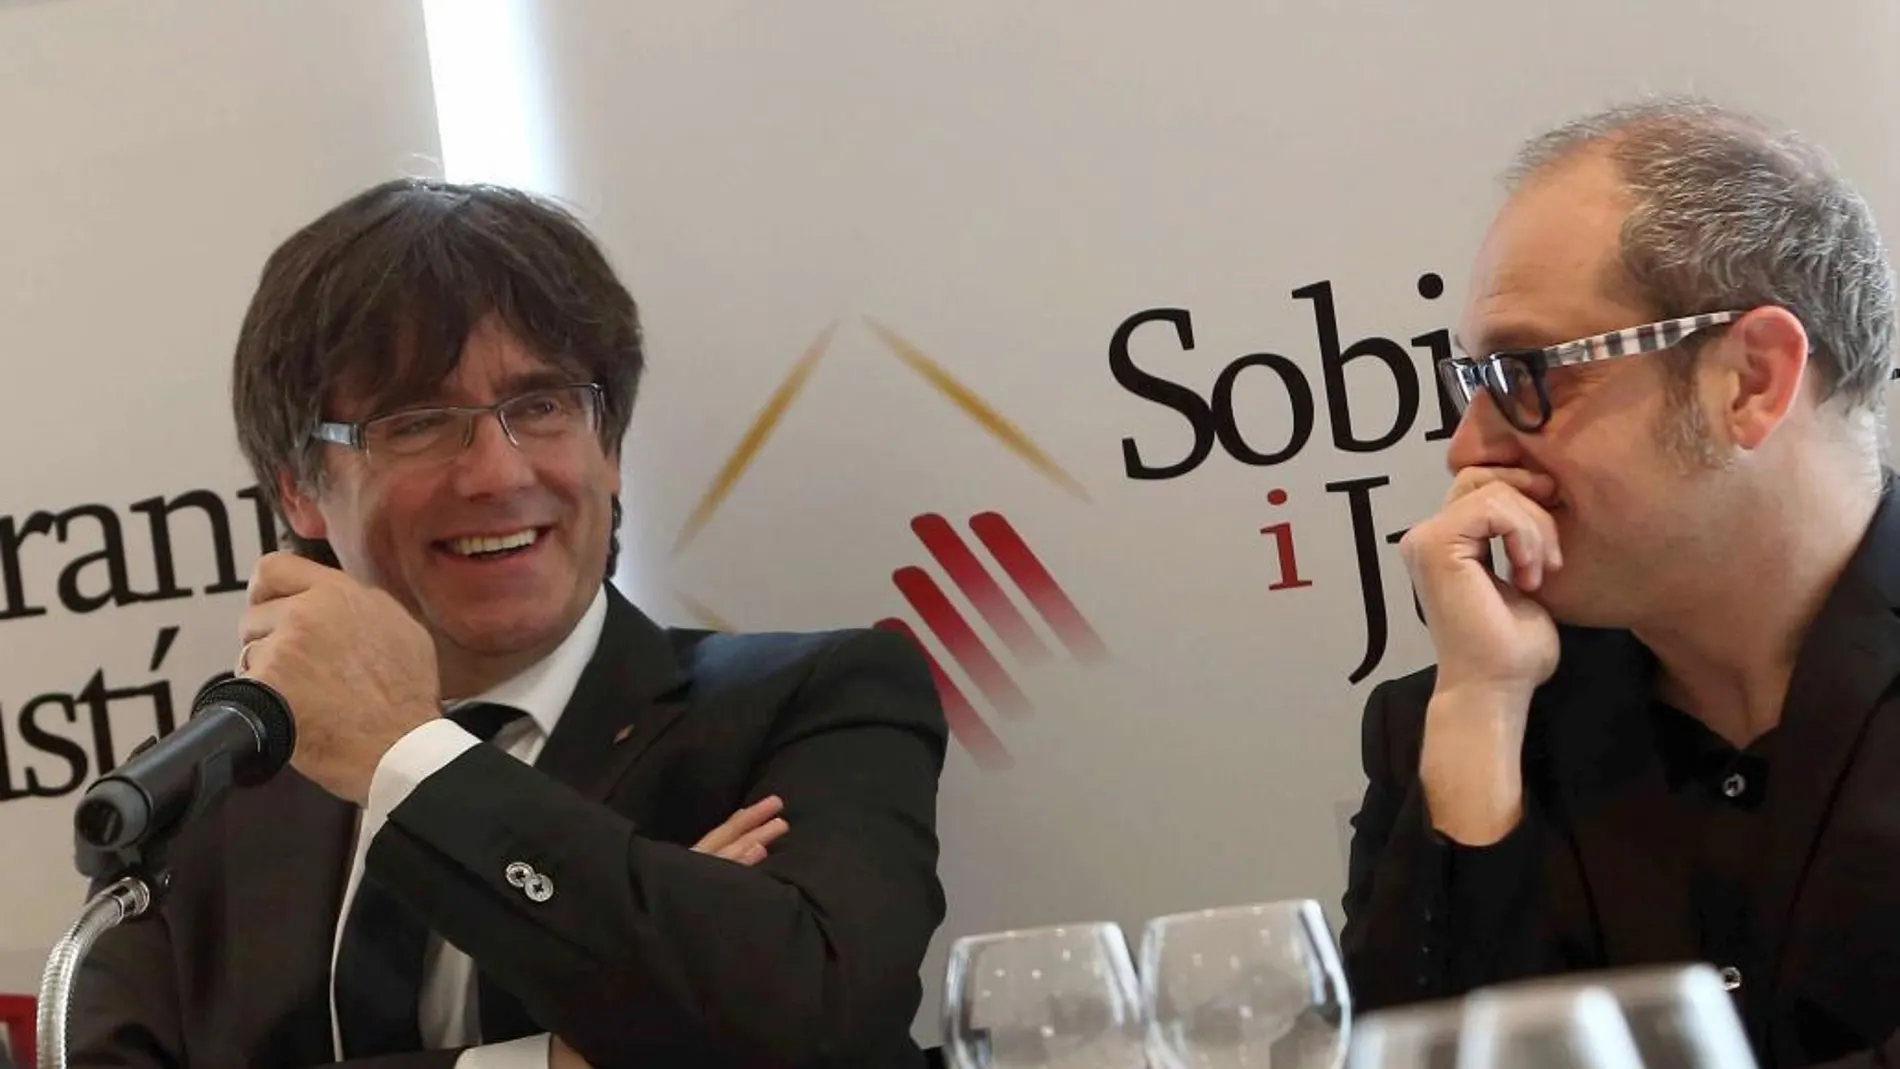 Carles Puigdemont con el periodista Quico Sallés en el coloquio-almuerzo titulado "Momentos decisivos", organizado por la entidad Sobirania i Justícia